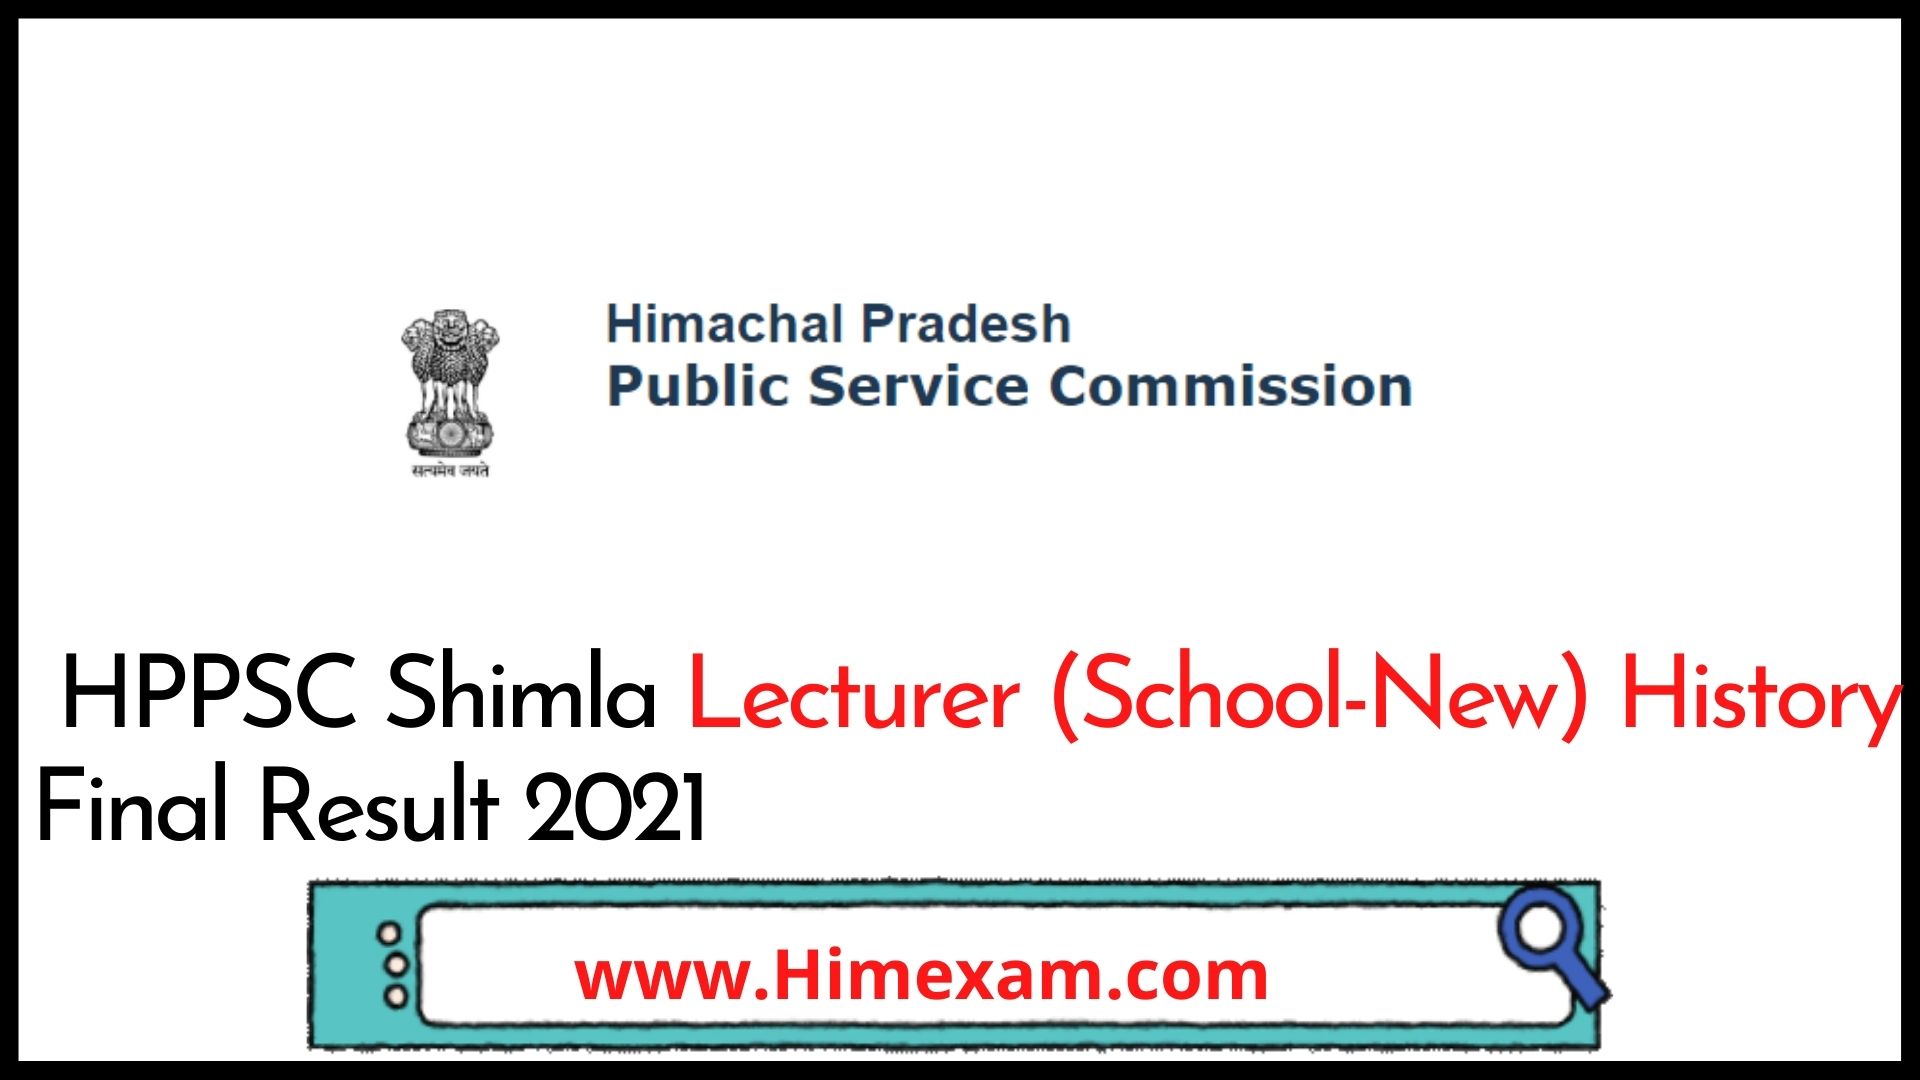 HPPSC Shimla Lecturer (School-New) History Final Result 2021